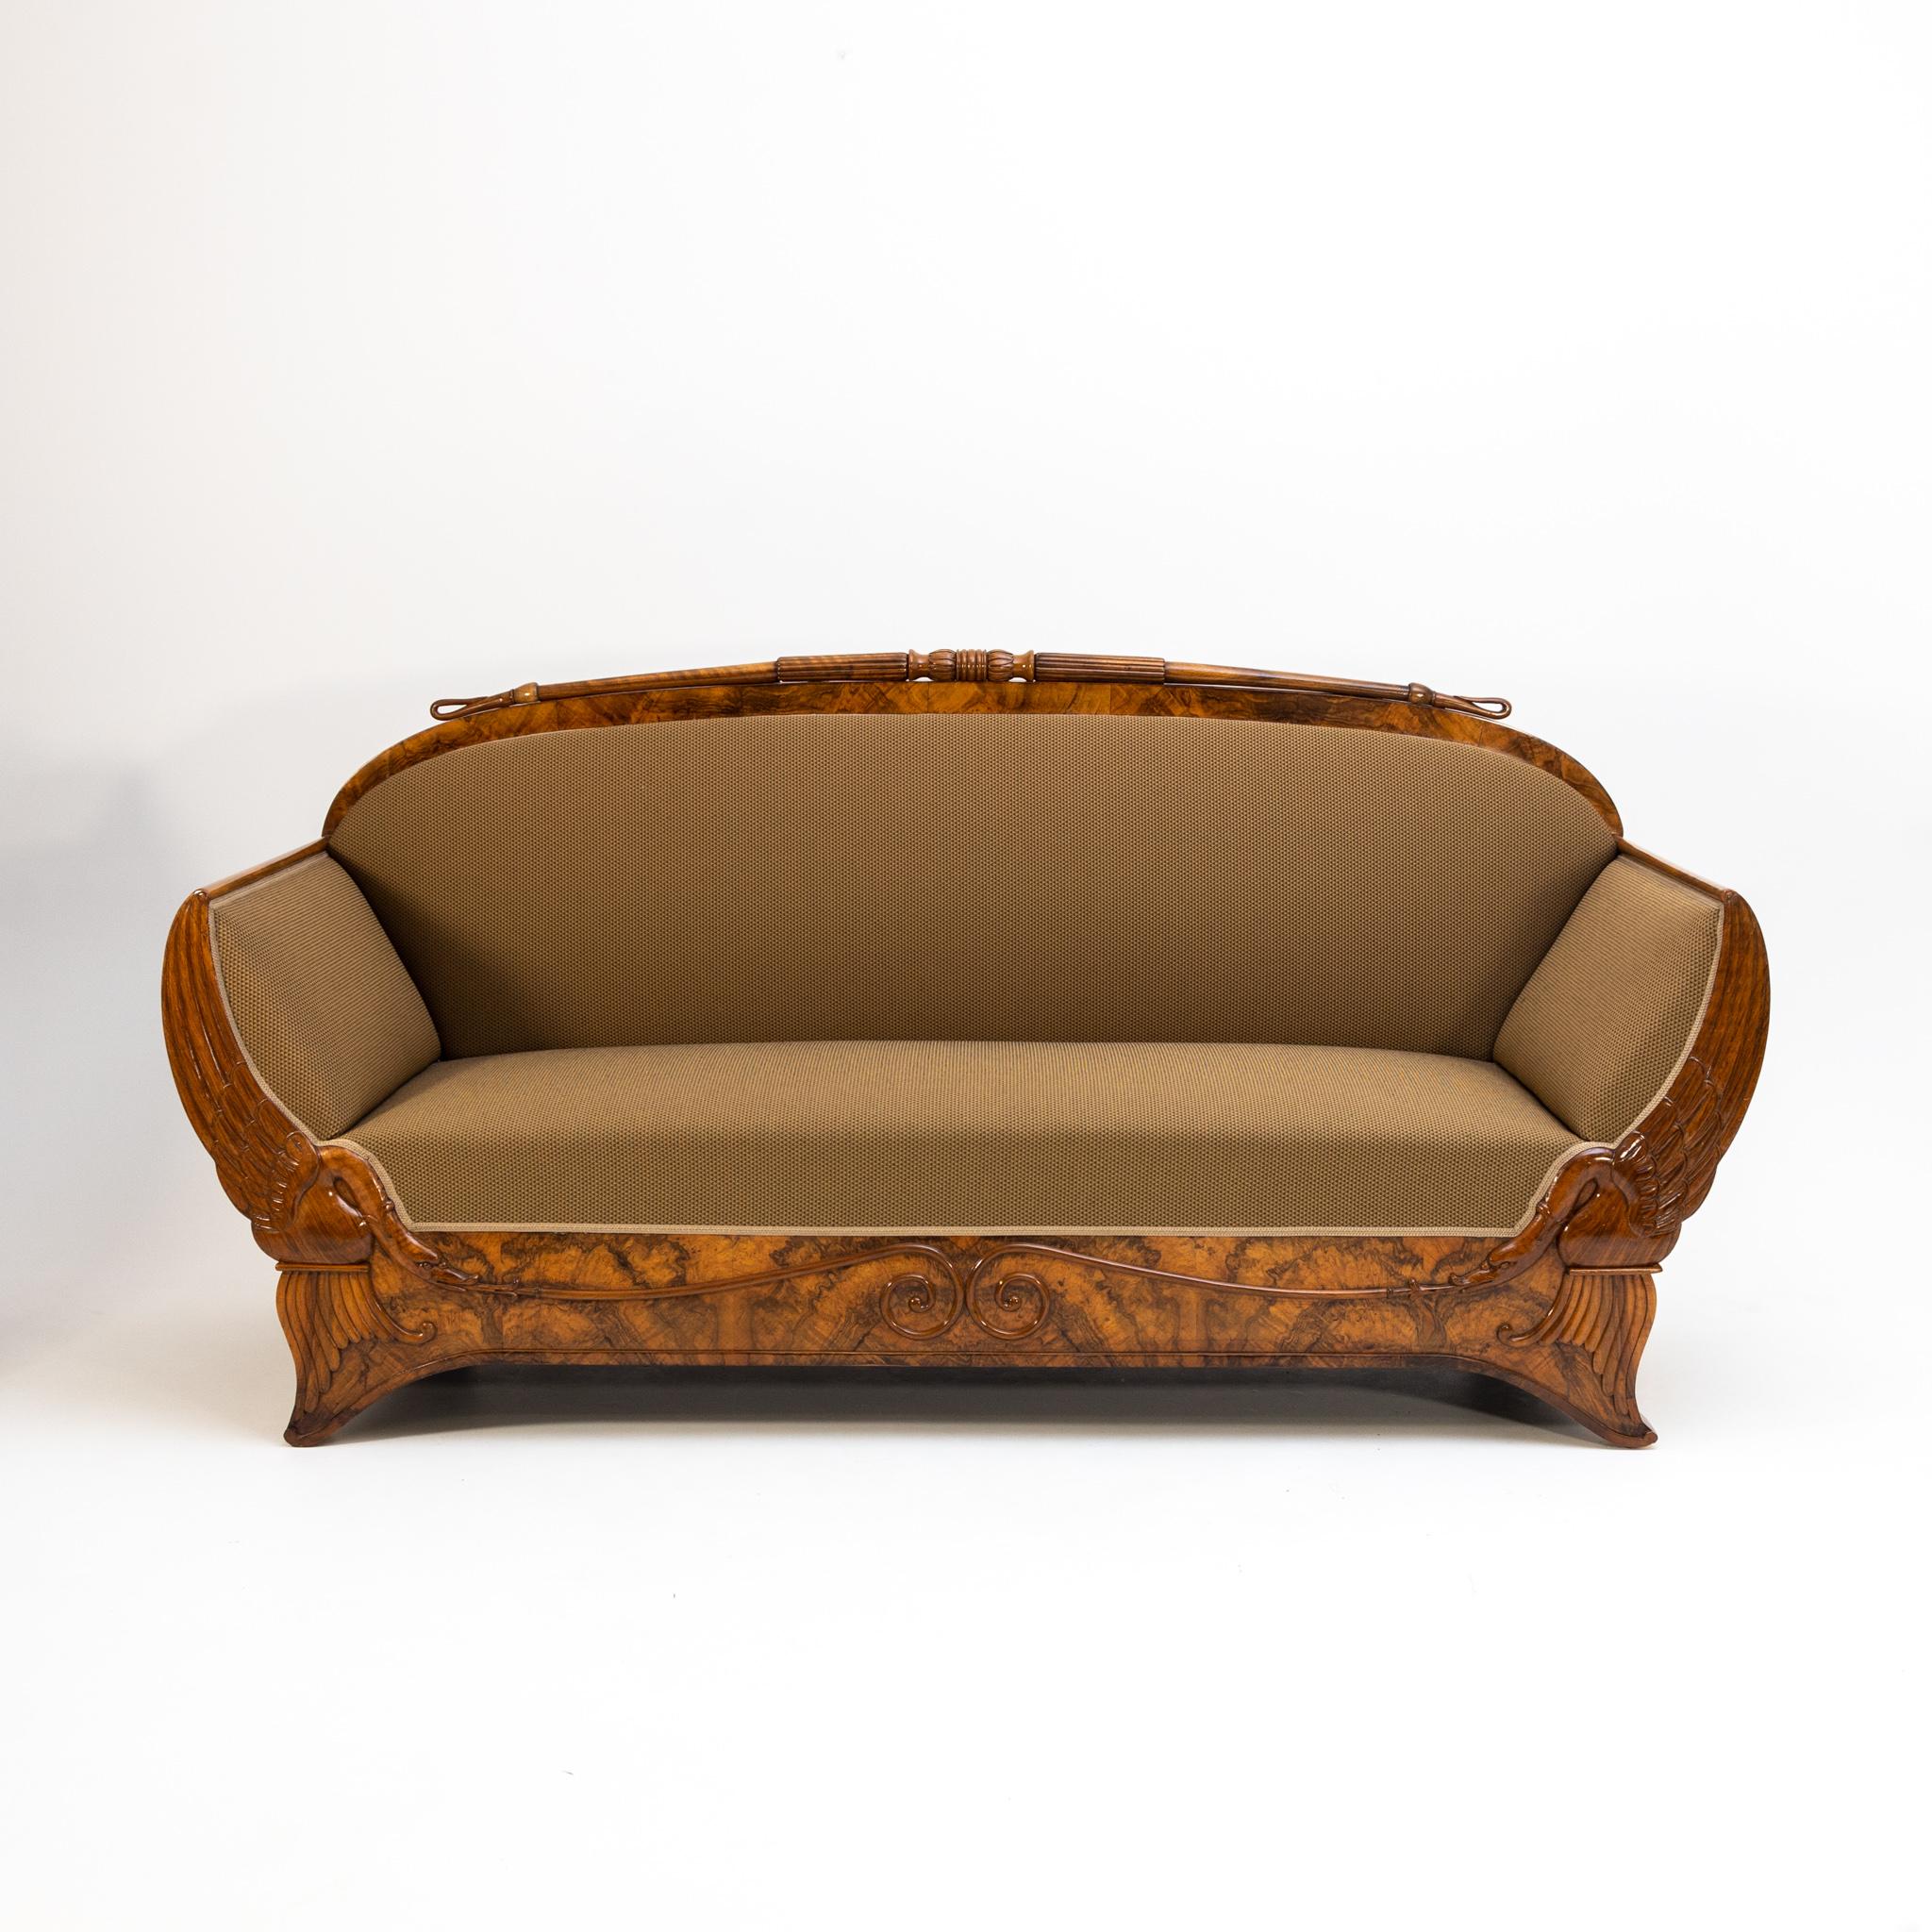 Biedermeier-Sofa, furniert in Nussbaum mit geschnitzten Schwanendekorationen. Das Sofa ist neu gepolstert und professionell restauriert worden.